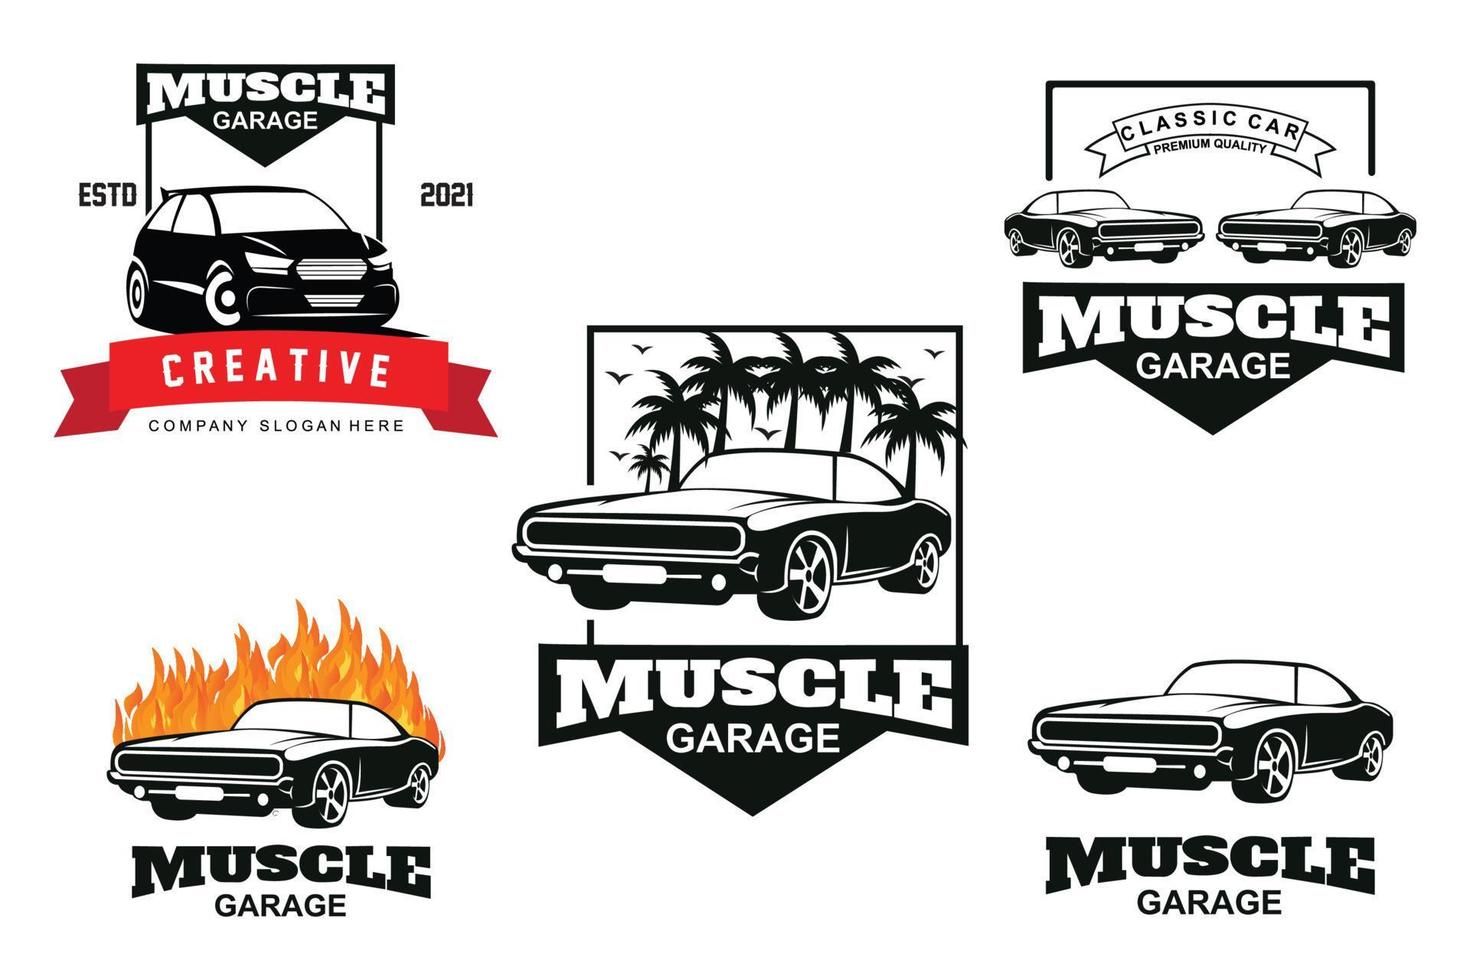 diseño de juego de paquete de logotipo de coche clásico americano, ilustración de vehículo de automóvil muscular vector